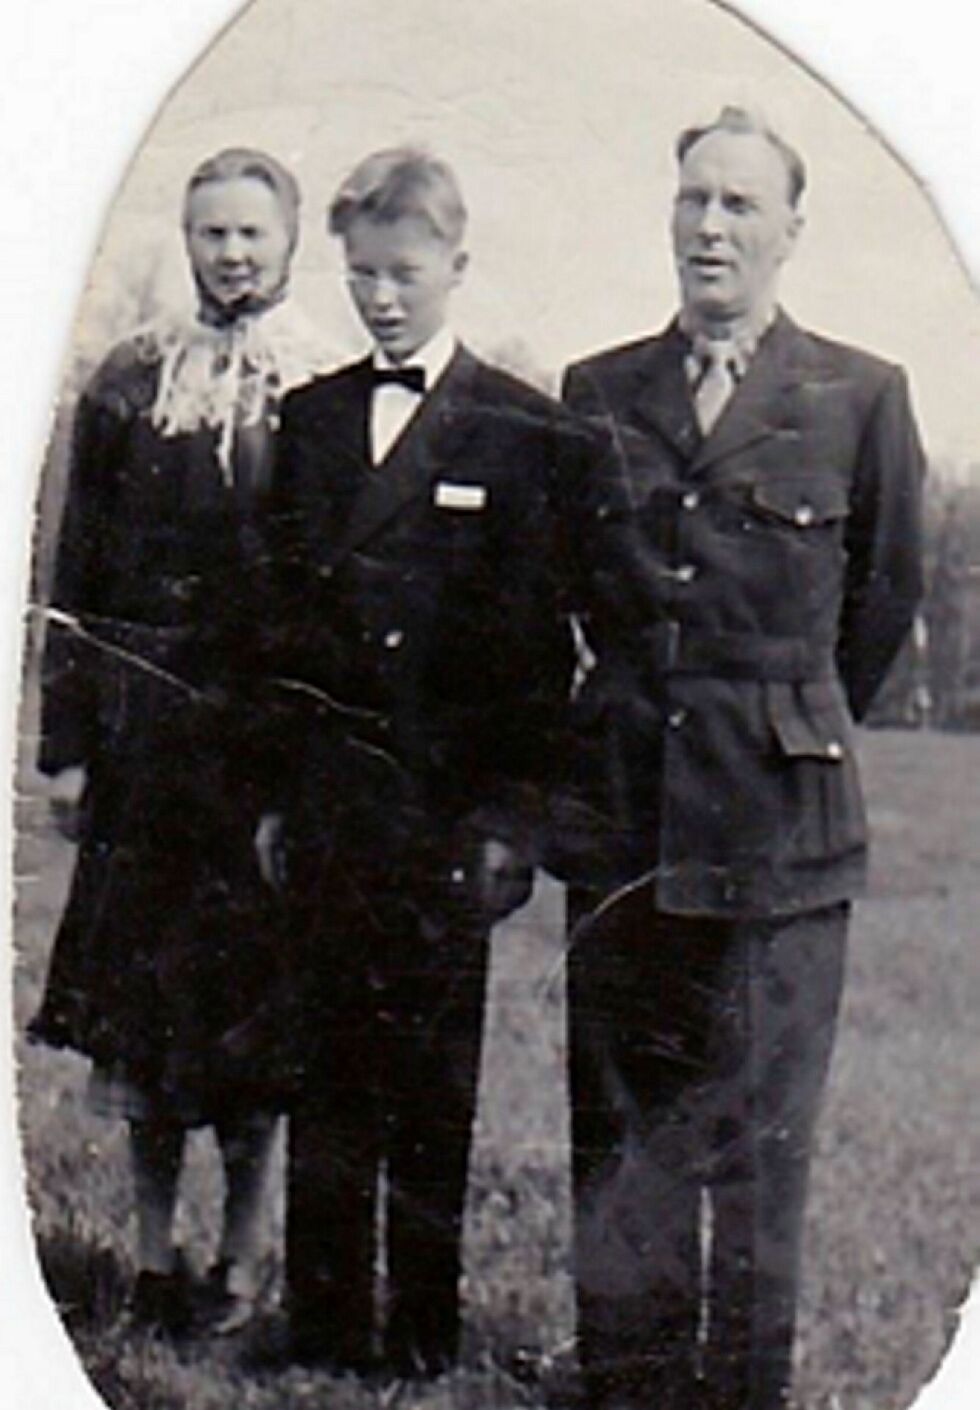 Bilde fra min konfirmasjon 1955. Jeg står mellom min mor og far.
Privat foto